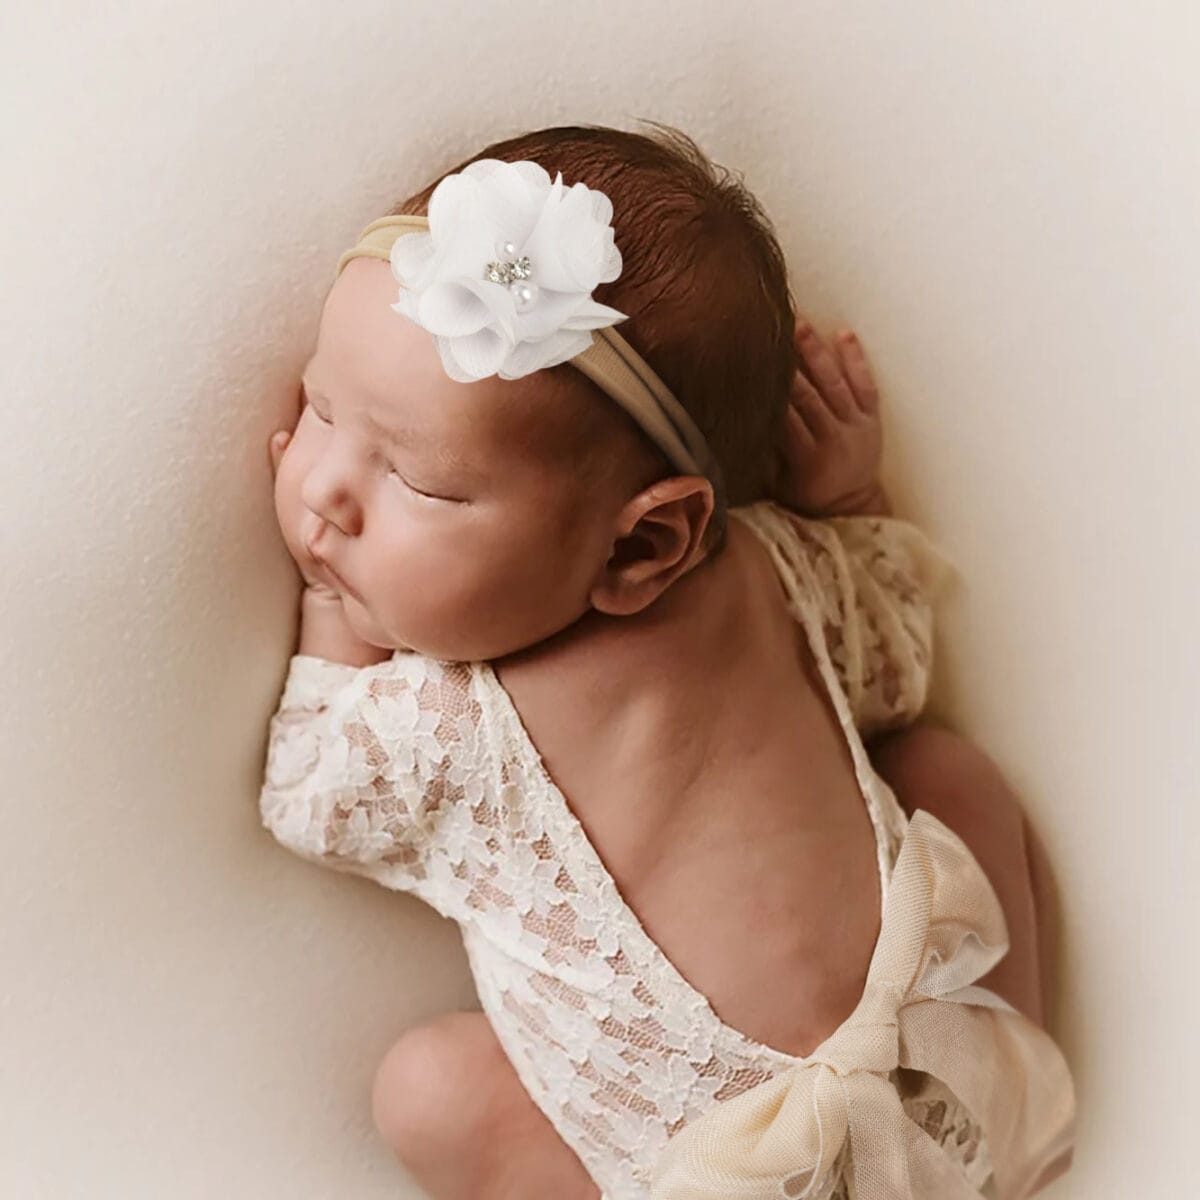 Neugeborenes schlummert friedlich im Spitzen-Strampler mit rückenfreiem Design und weißem Blumen-Haarband, perfekt für Neugeborenenfotografie.